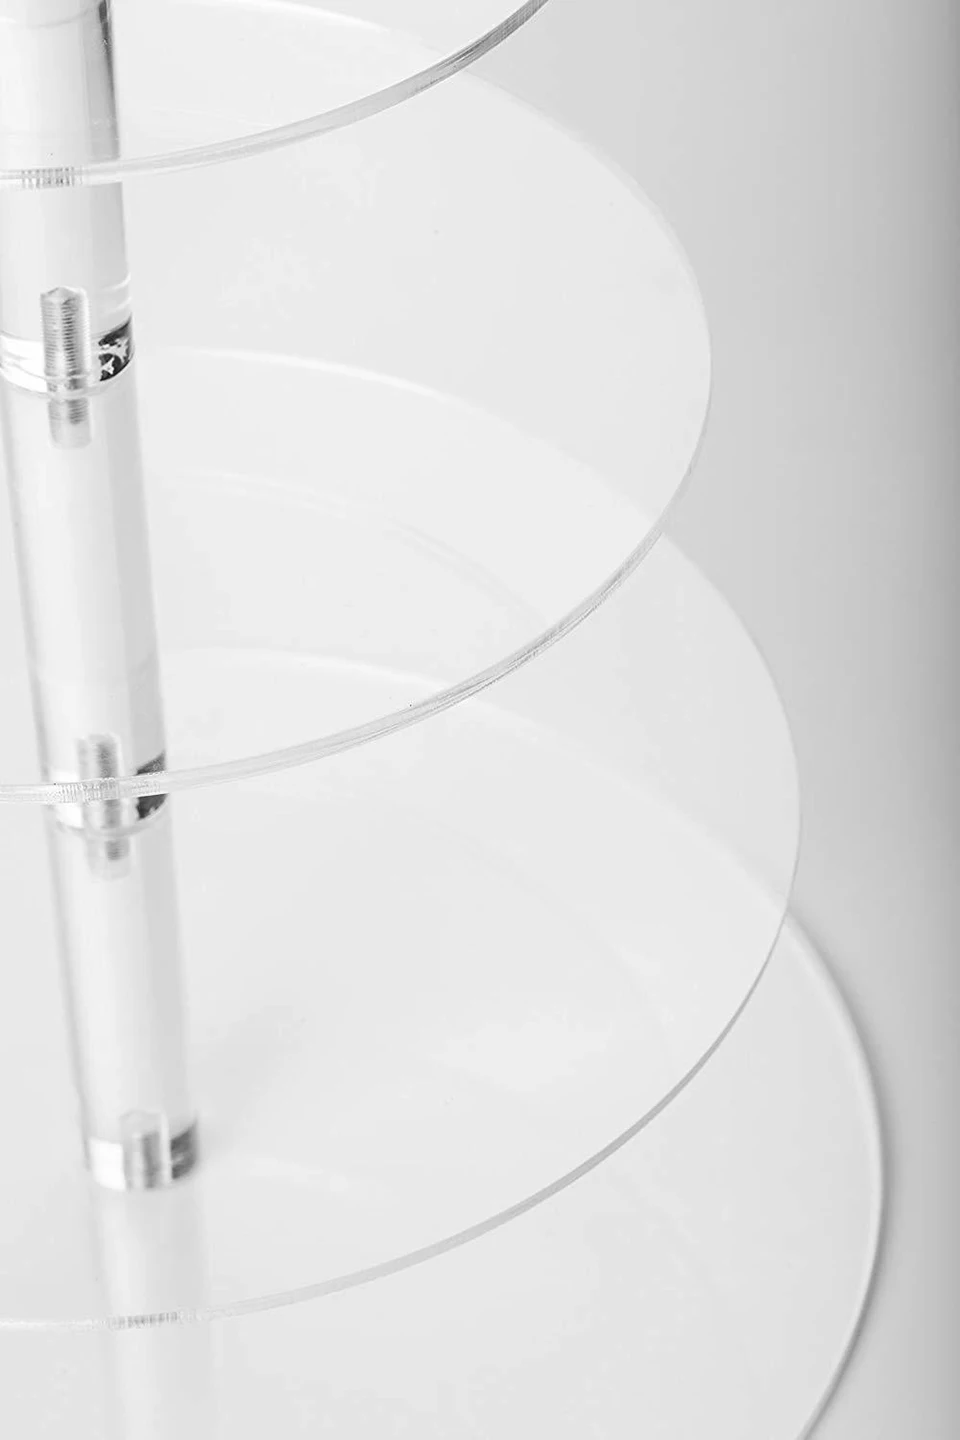 Transhome Cupake стенд прозрачный съемный акриловый стенд для пирожных Стенд Круглый держатель для кексов Свадебные украшения на день рождения